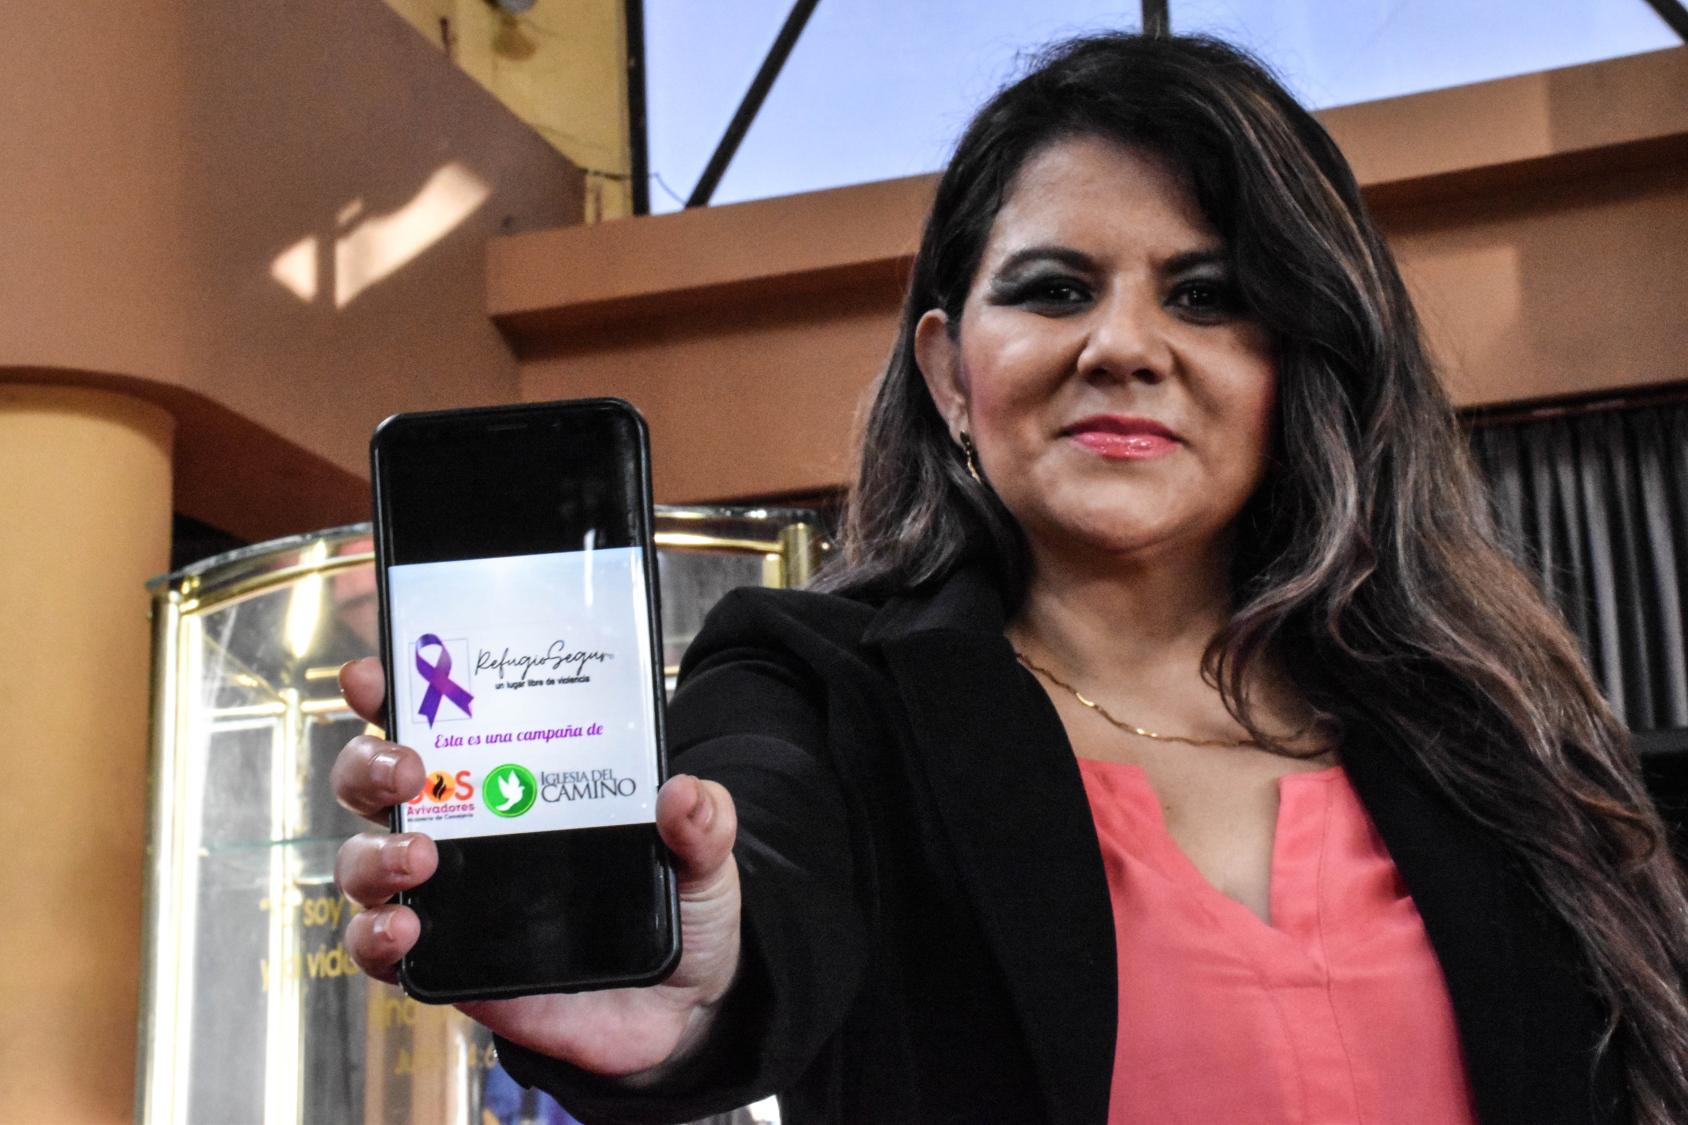 Женщина, стоящая перед камерой, держит телефон с фиолетовой лентой и надписью "Refugio Seguro" (исп. "безопасное место") 